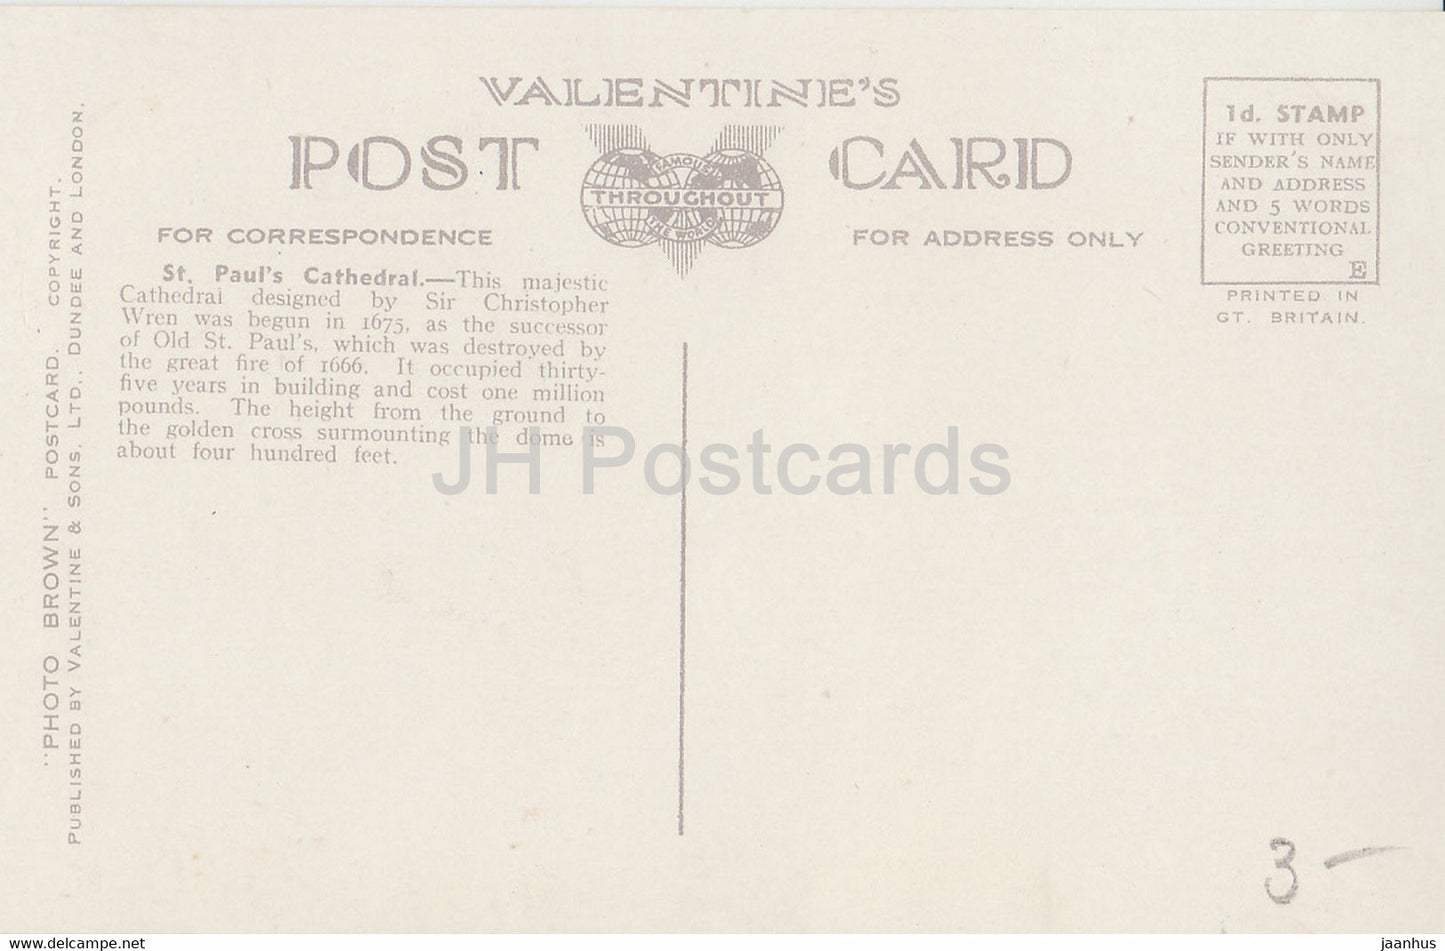 London - St Paul's Cathedral - Valentine - bus - 85595 - old postcard - England - United Kingdom - unused